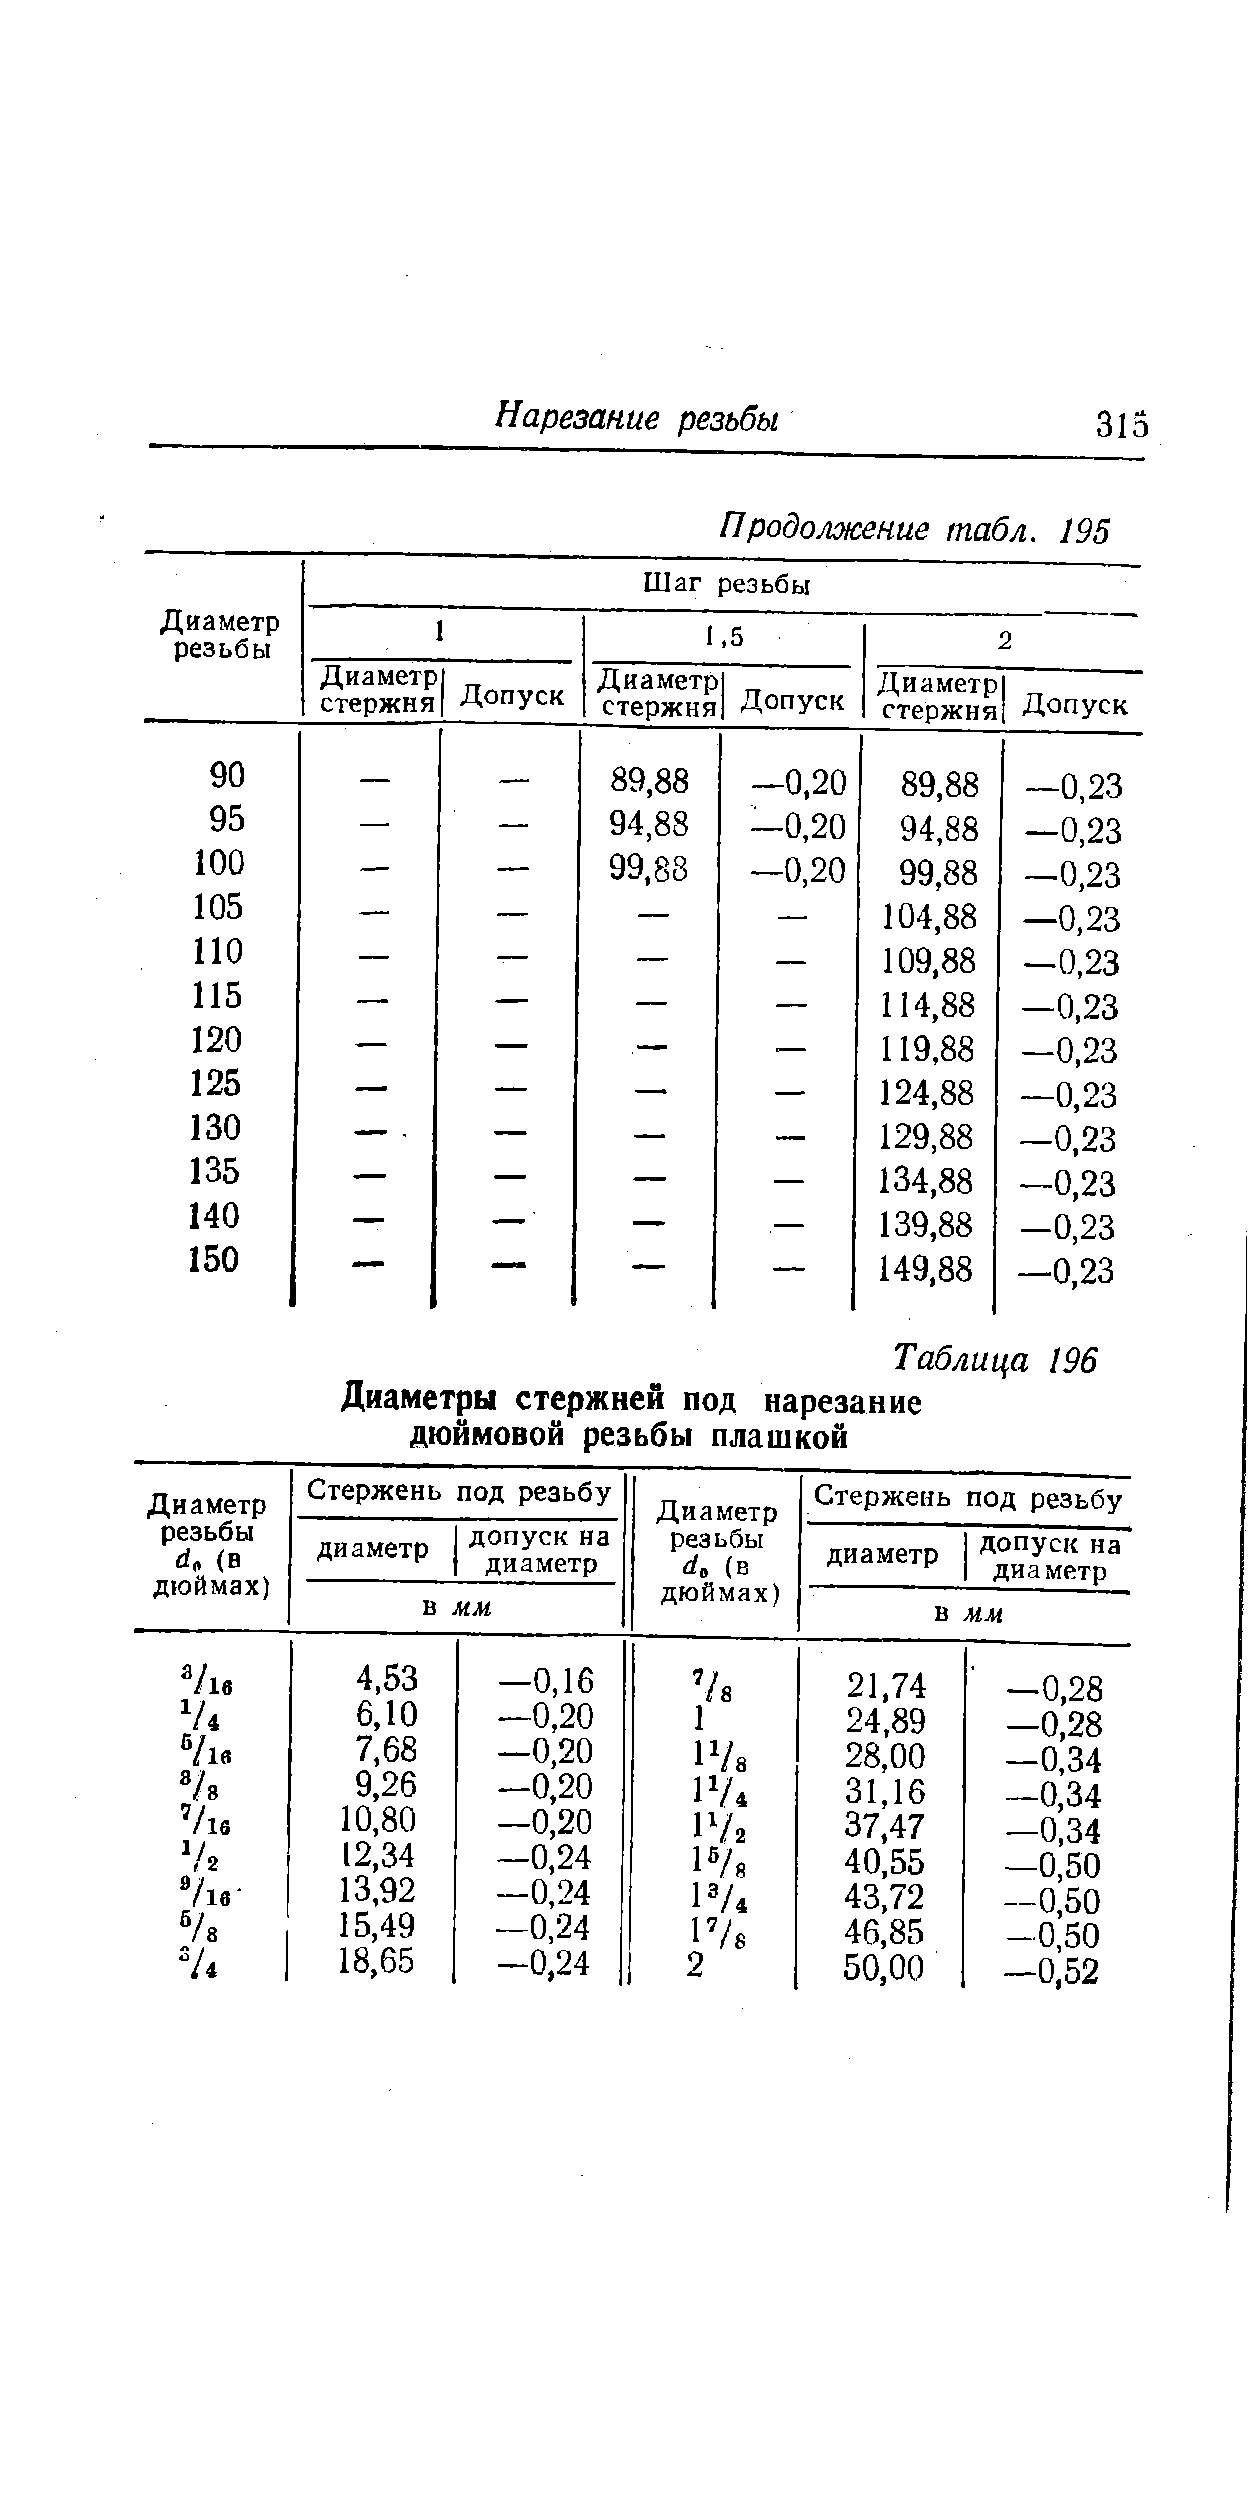 Таблица 196 Диаметры стержней под нарезание дюймовой резьбы плашкой
